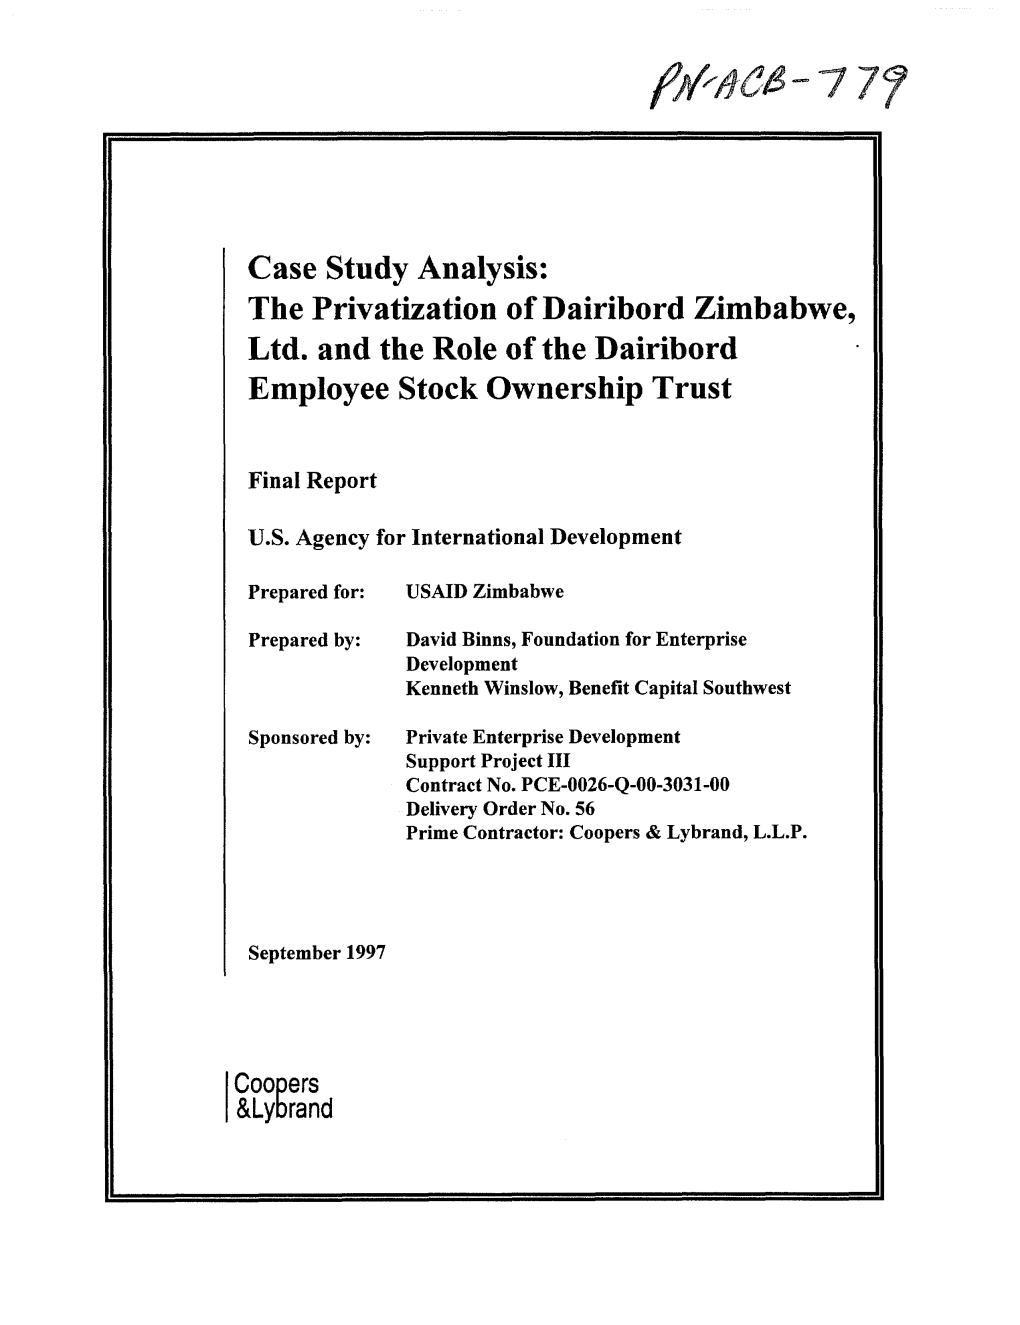 Case Study Analysis: the Privatization of Dairibord Zimbabwe, Ltd